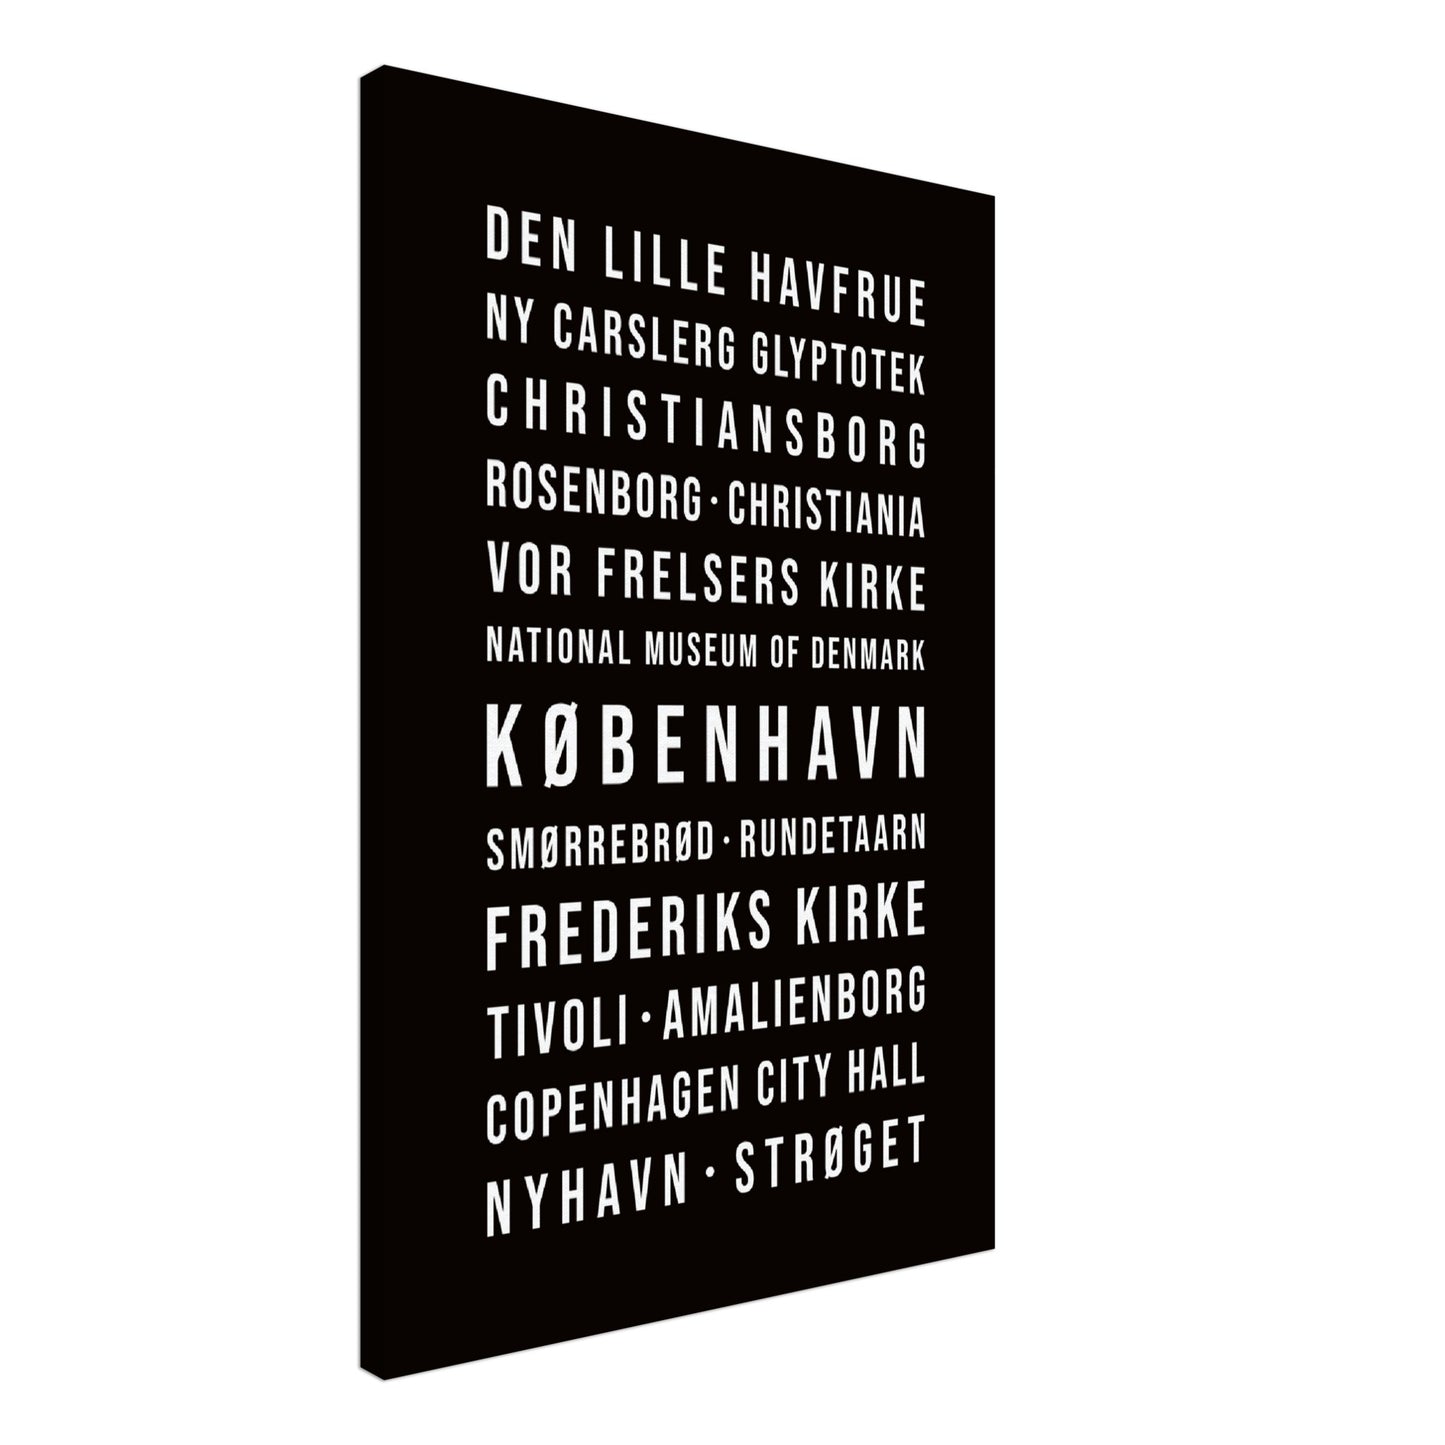 Kopenhagen - Typografie-Wandbild - Leinwand Schwarzgrau Neutral